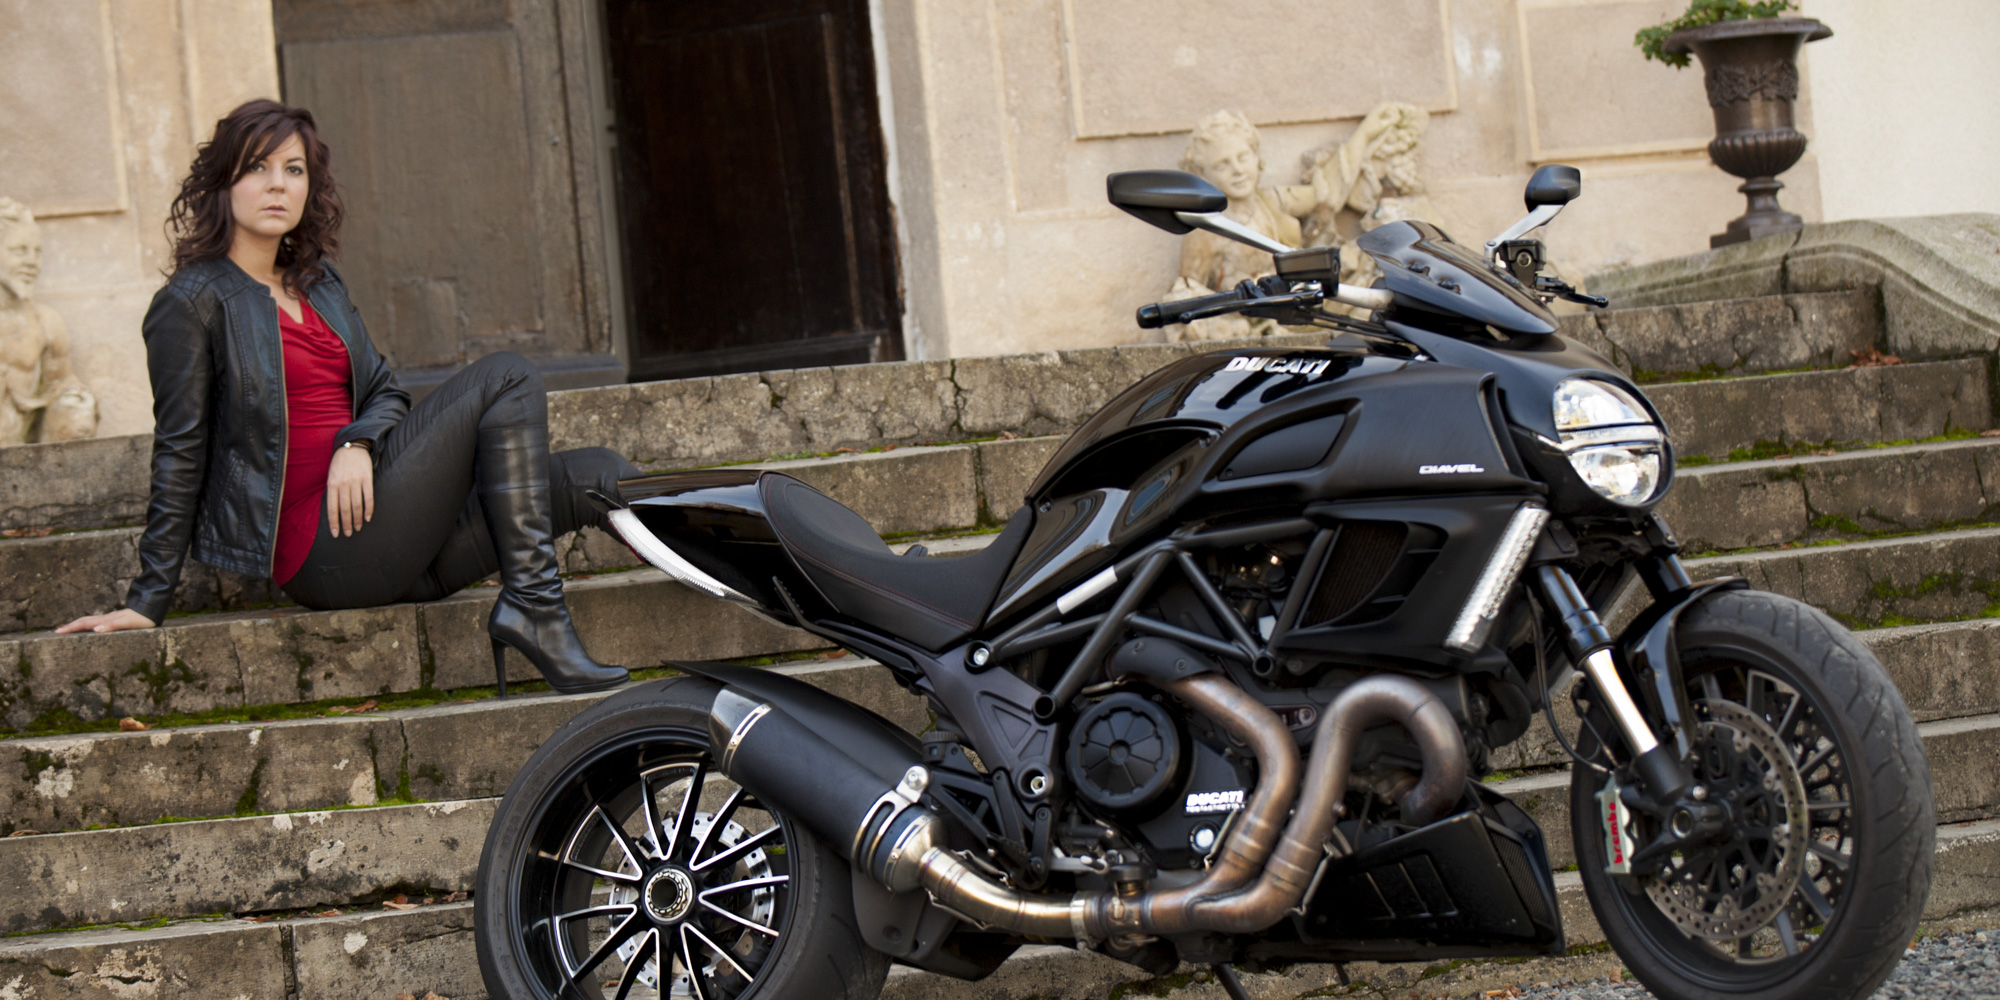 Photographie d'une moto accompagné par une femme dans un chateau à Lyon